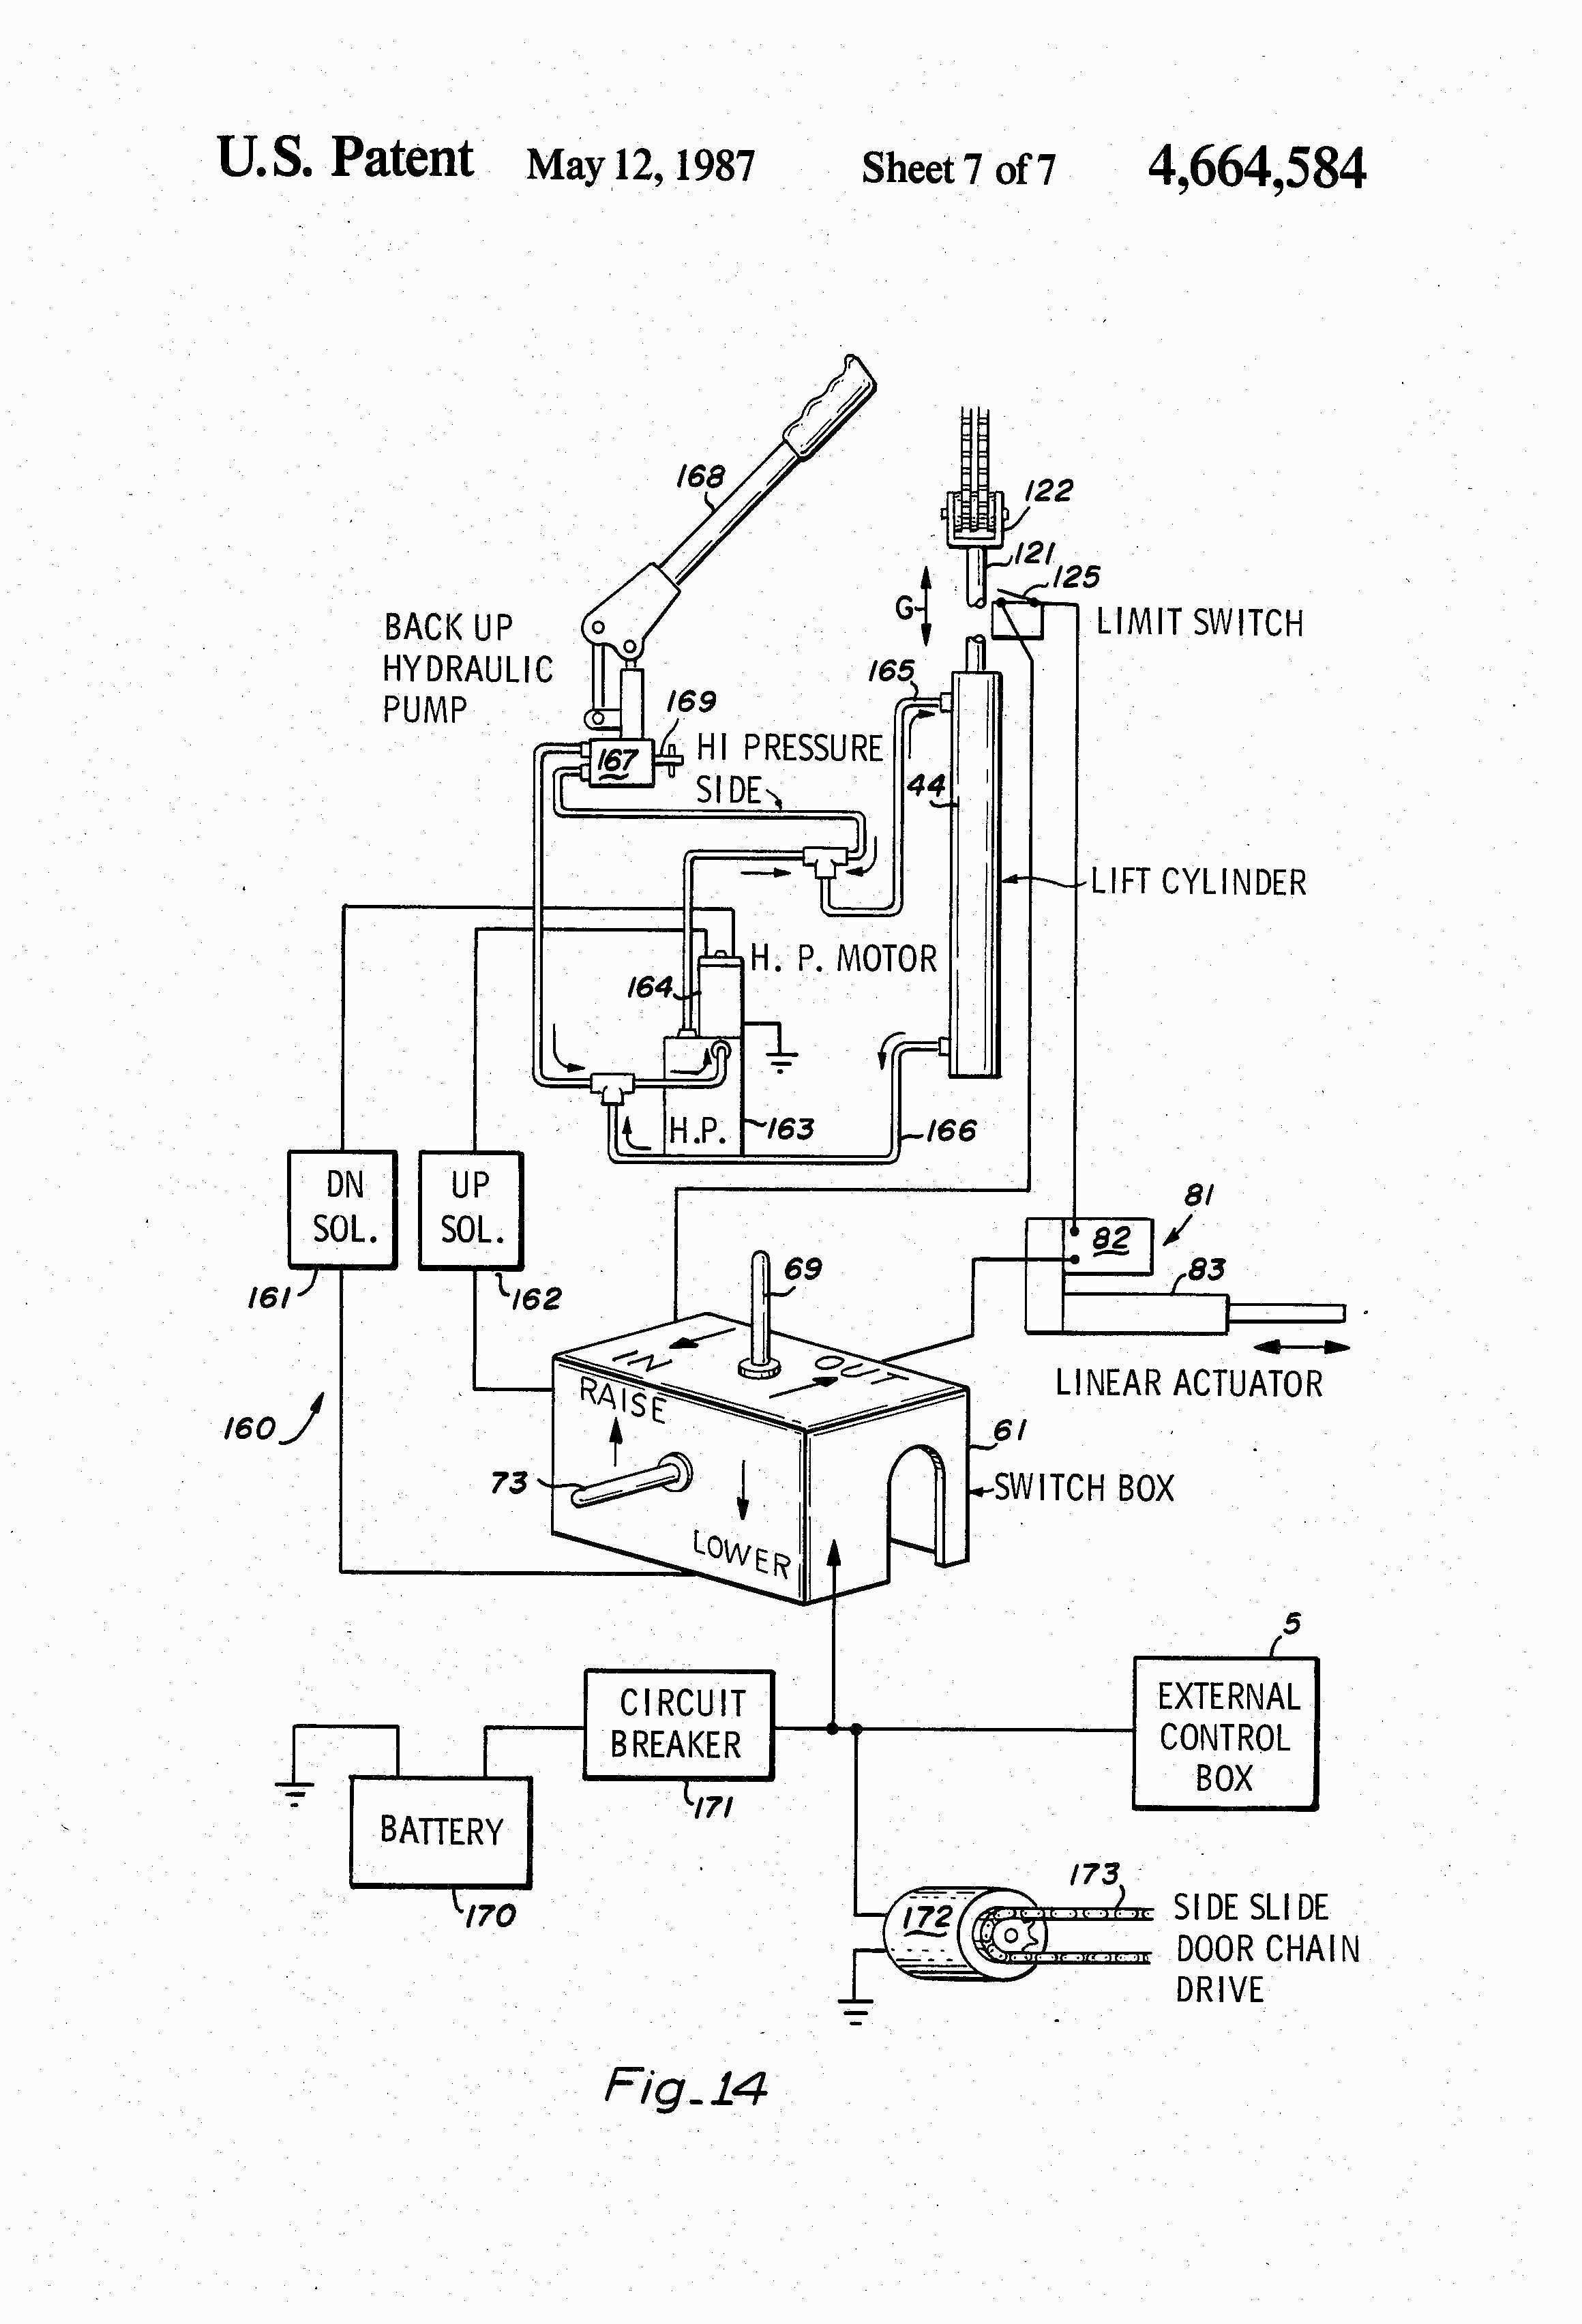 telsta t40c wiring diagram wiring diagramtelsta t40c wiring diagram wiring diagram technicversalift wiring schematics wiring diagram